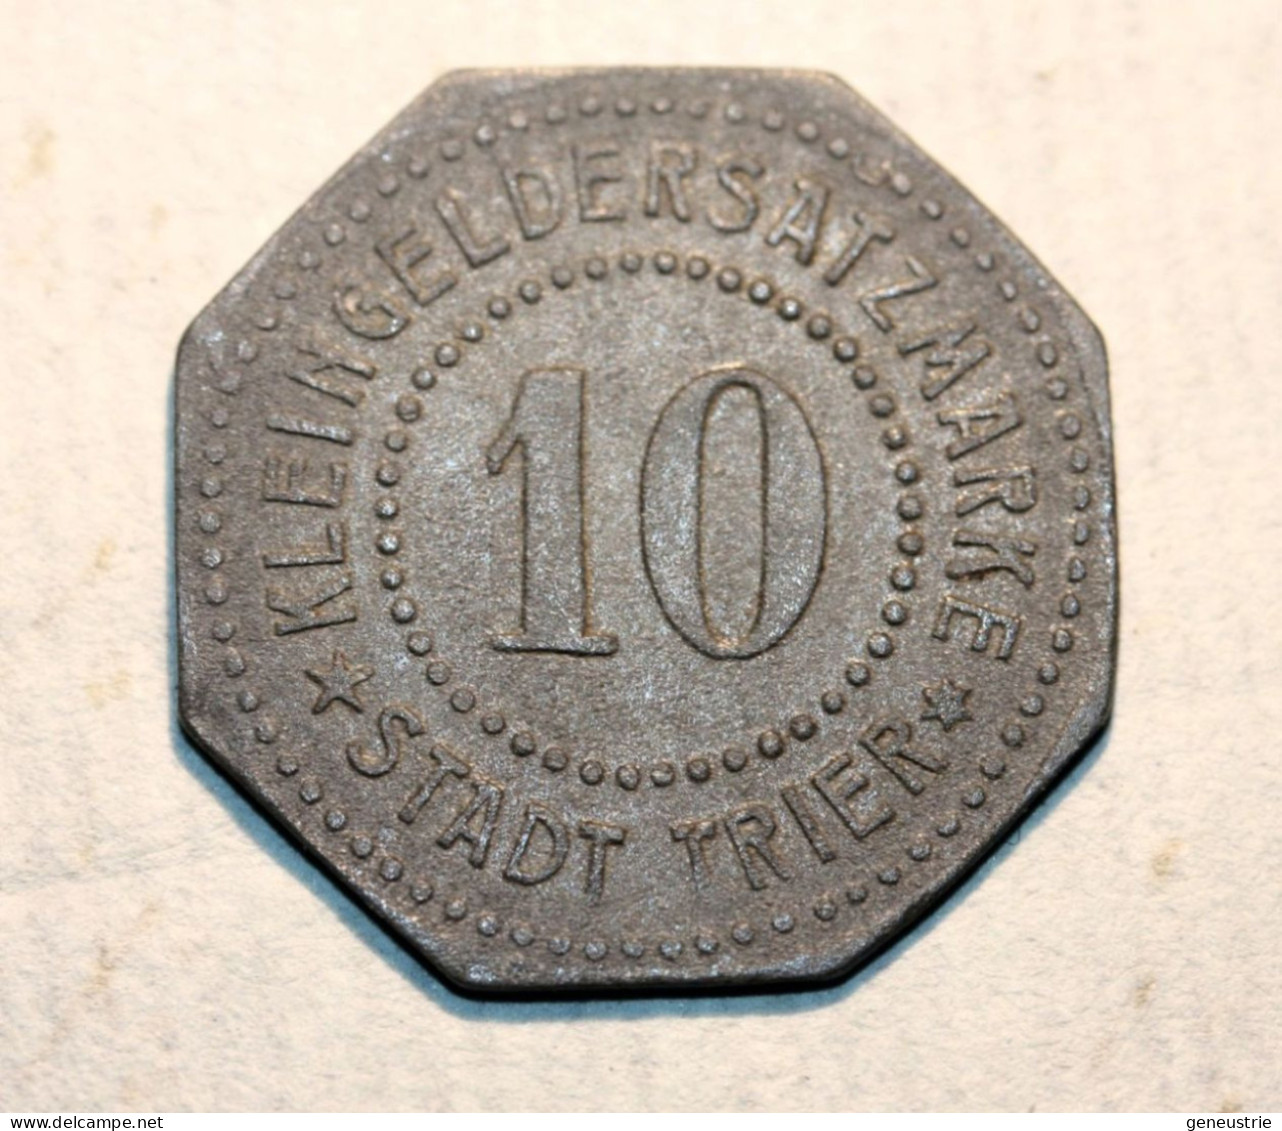 WWI Monnaie Jeton De Necessité De La Ville De Trêves "10 Stadt Trier" German Emergency Token WW1 - Monedas/ De Necesidad